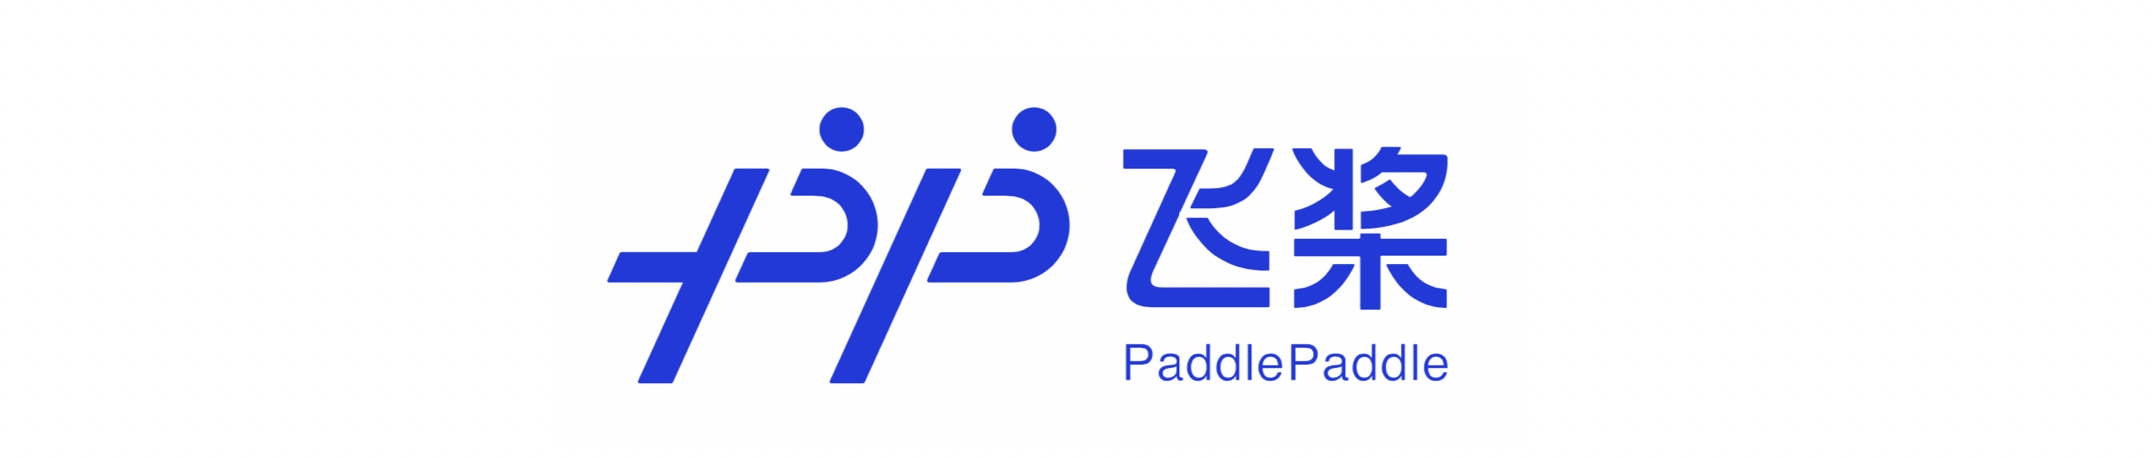 PaddlePaddle ロゴ